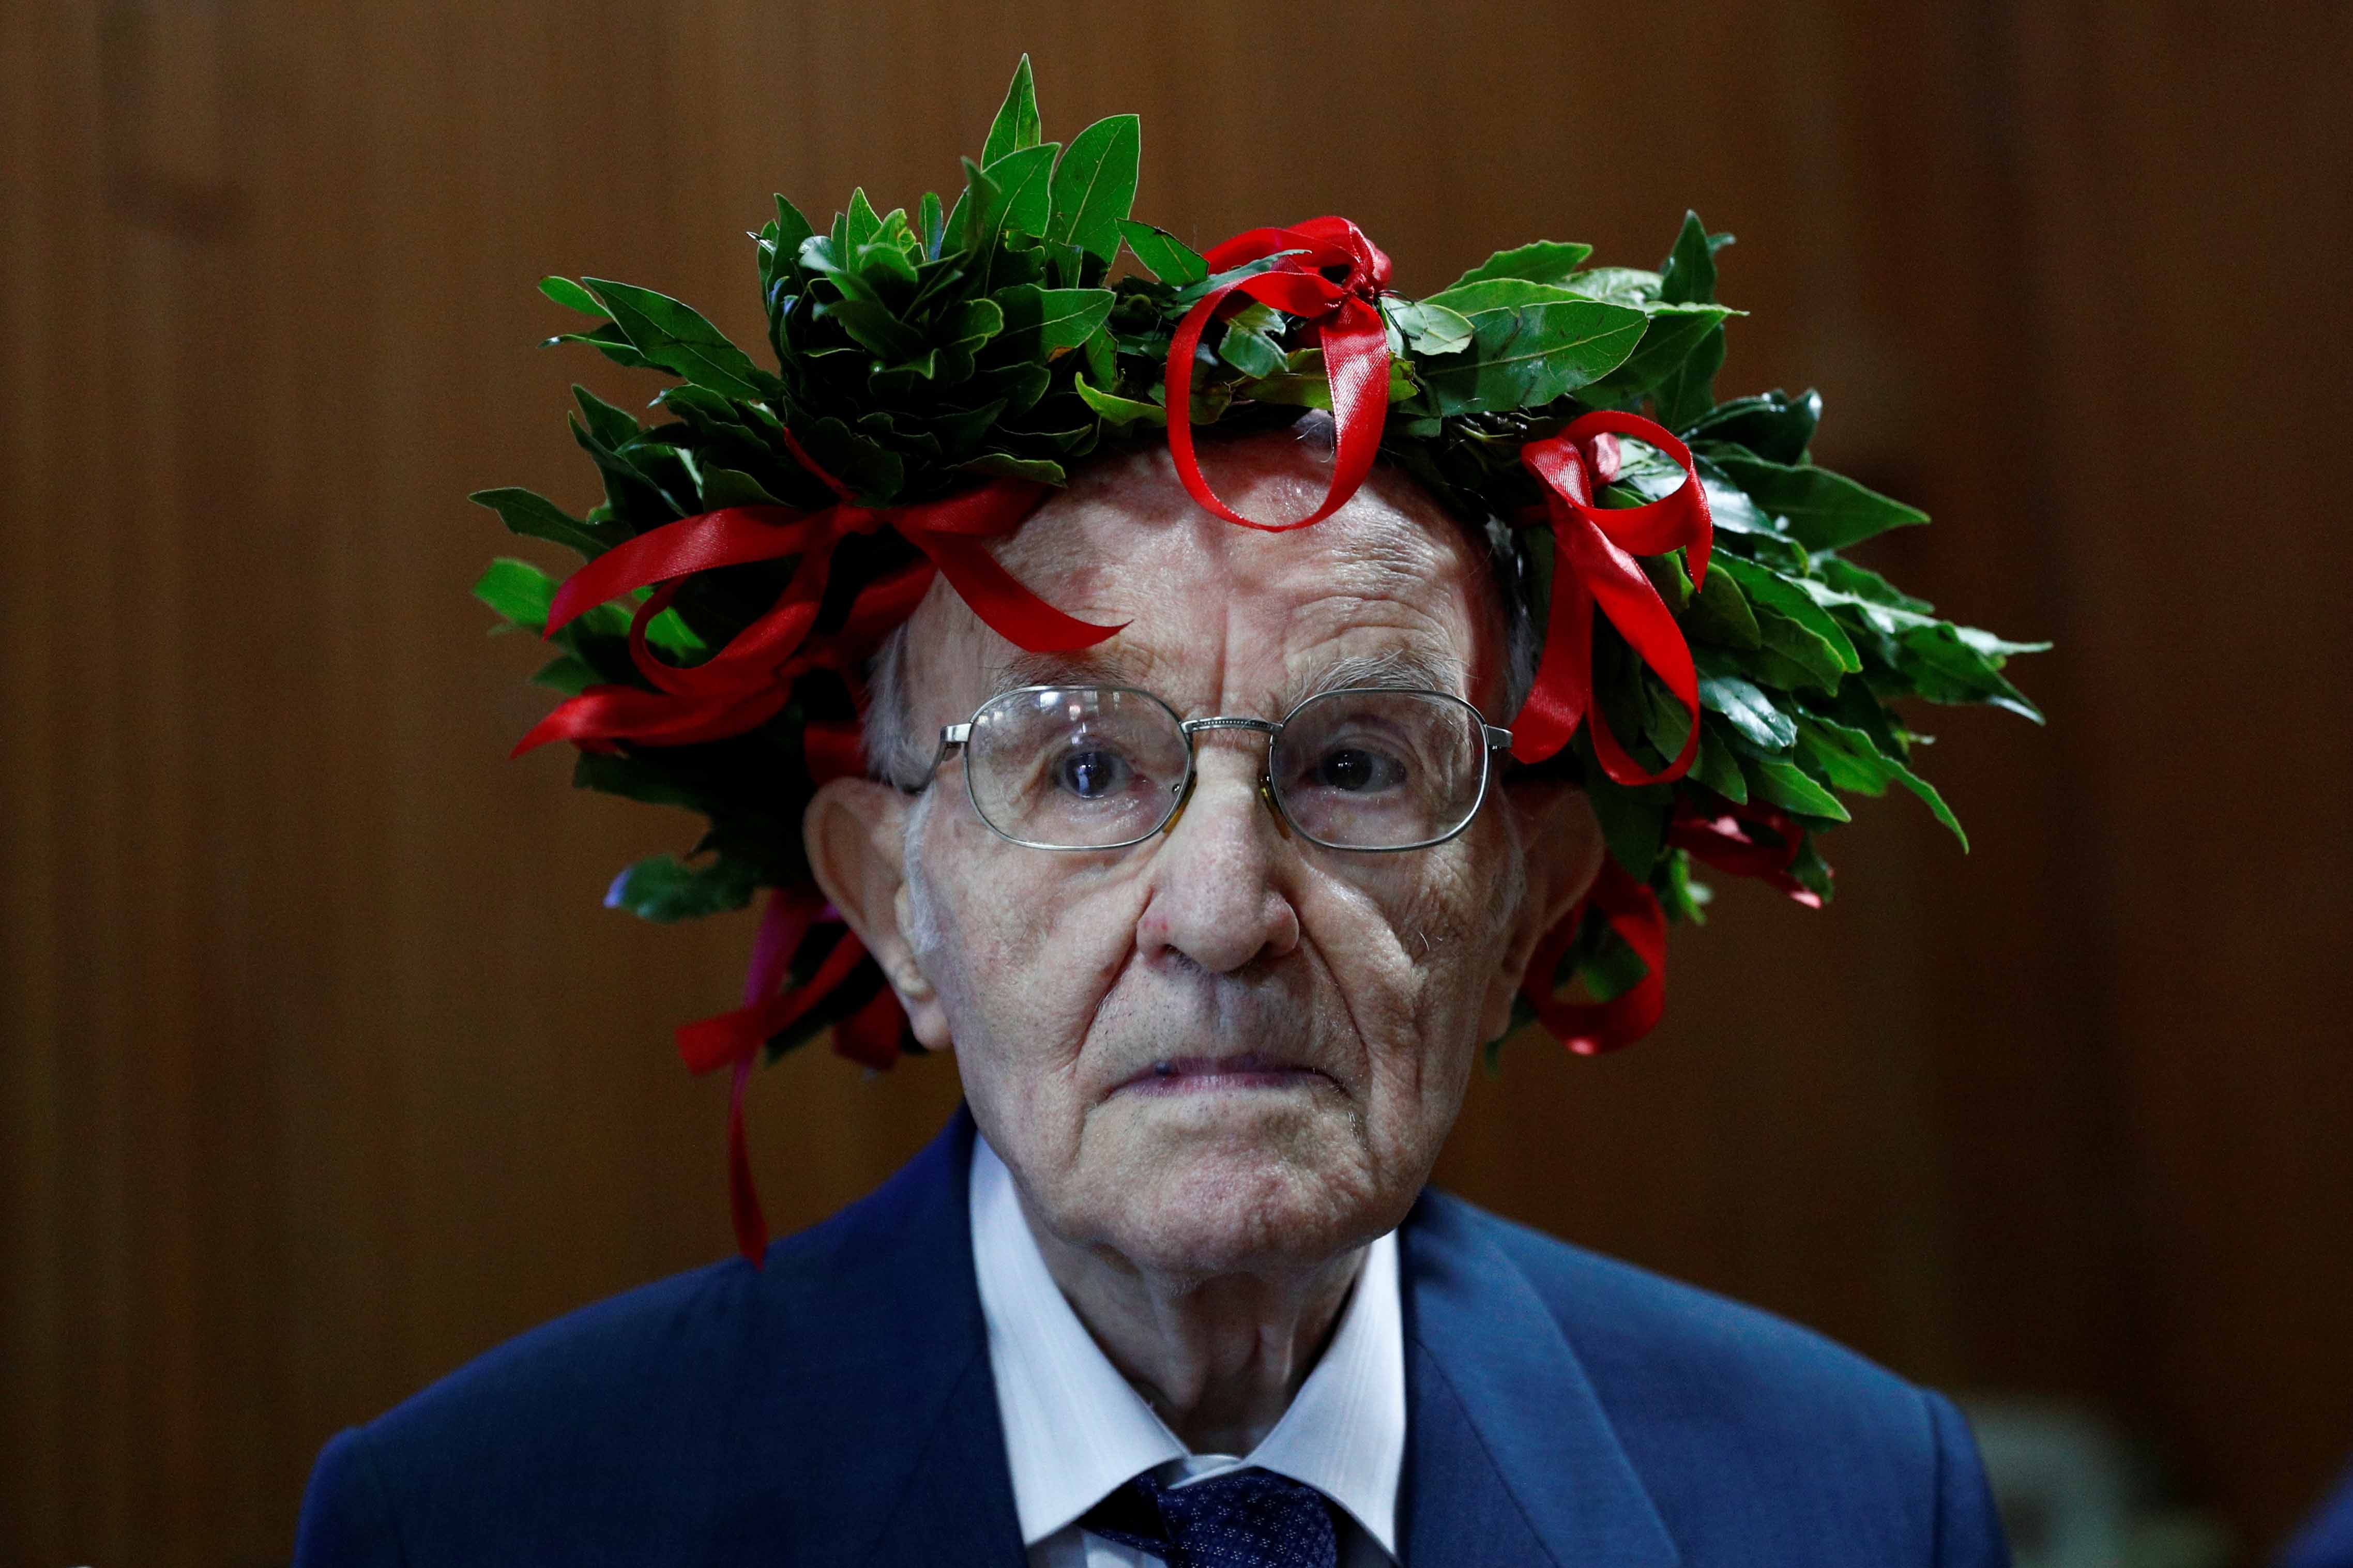 Giuseppe Paterno, 96 tuổi, sinh viên lớn tuổi nhất của Ý, đeo vòng nguyệt quế truyền thống được trao cho các sinh viên Ý khi họ tốt nghiệp, khi ông tham dự lễ tốt nghiệp của mình tại Đại học Palermo, ở Palermo, Ý, ngày 29 tháng 7 năm 2020. (Guglielmo Mangiapane / REUTERS qua The Epoch Times))